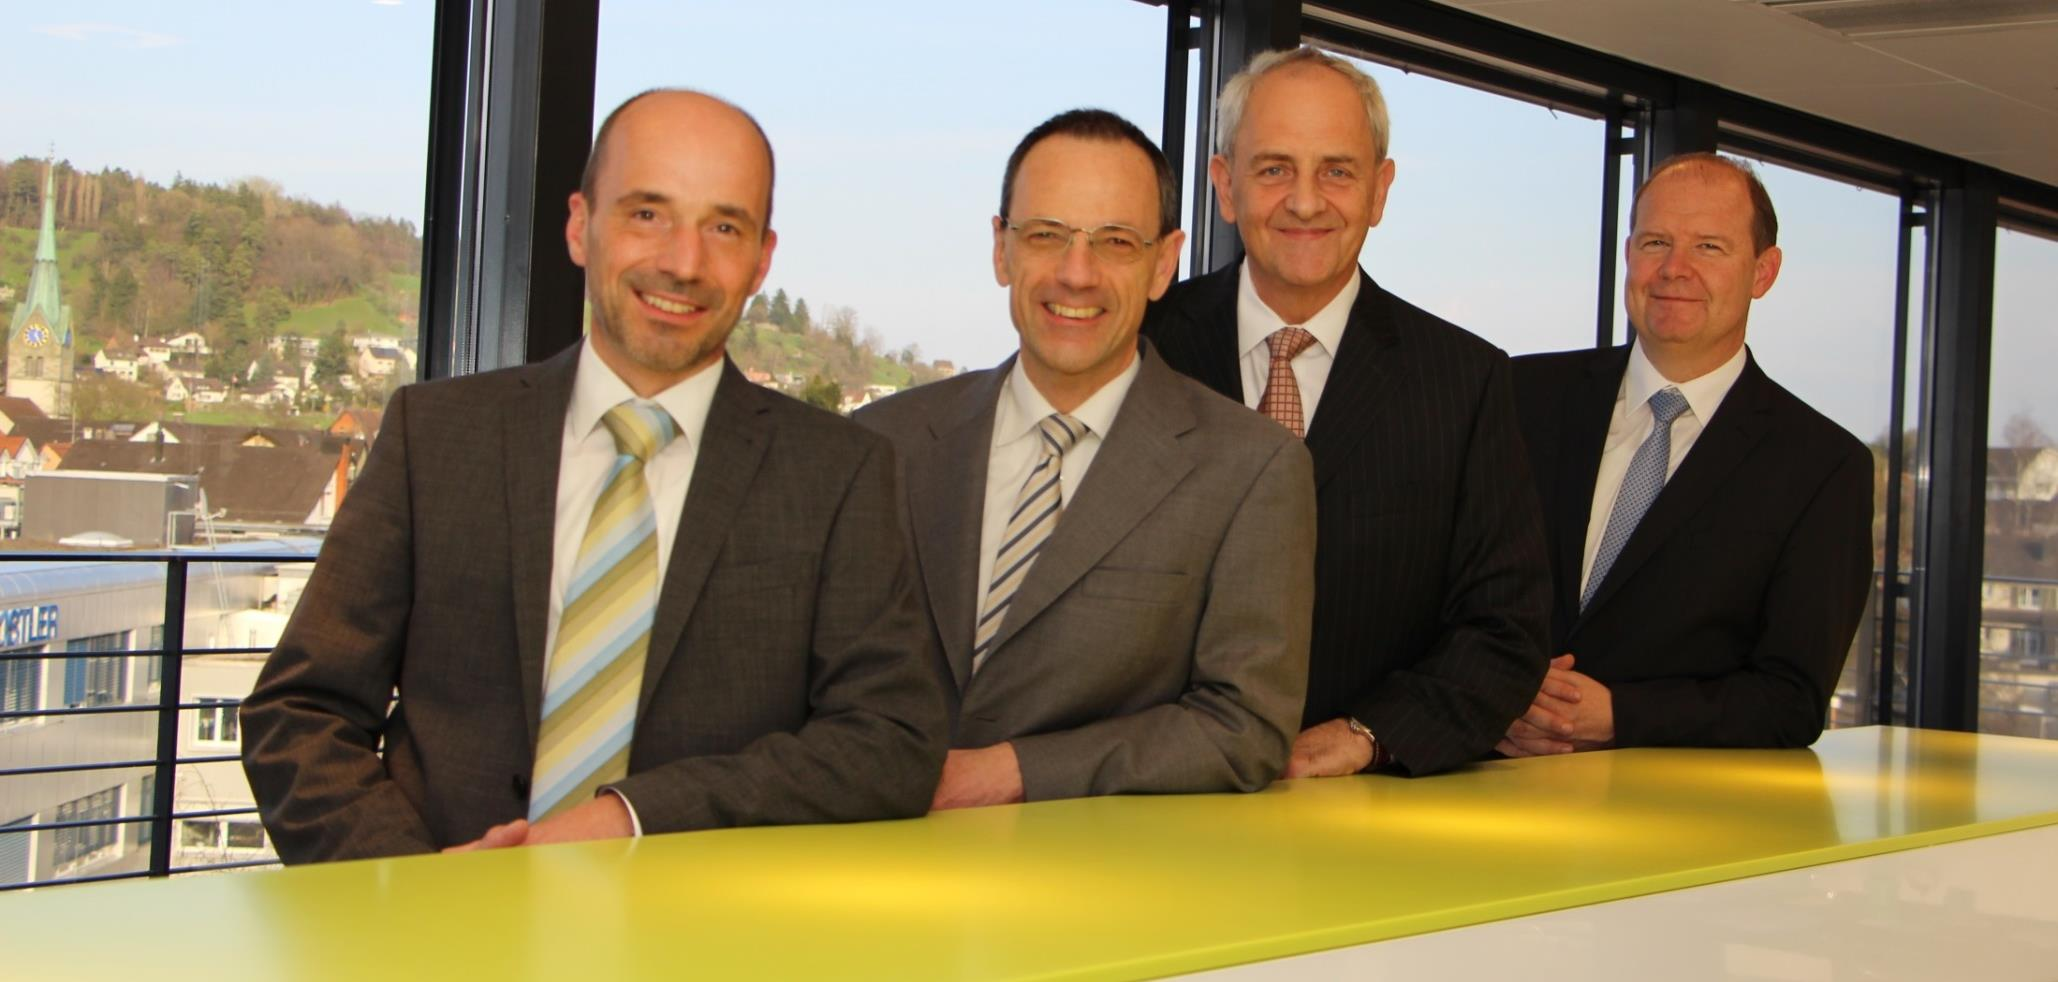 Kistler Gruppe Familienunternehmen in der Schweiz Börsenfähig - aber nicht börsenkotiert Von links nach rechts: 1. Rolf Sonderegger, CEO Kistler Gruppe 2.